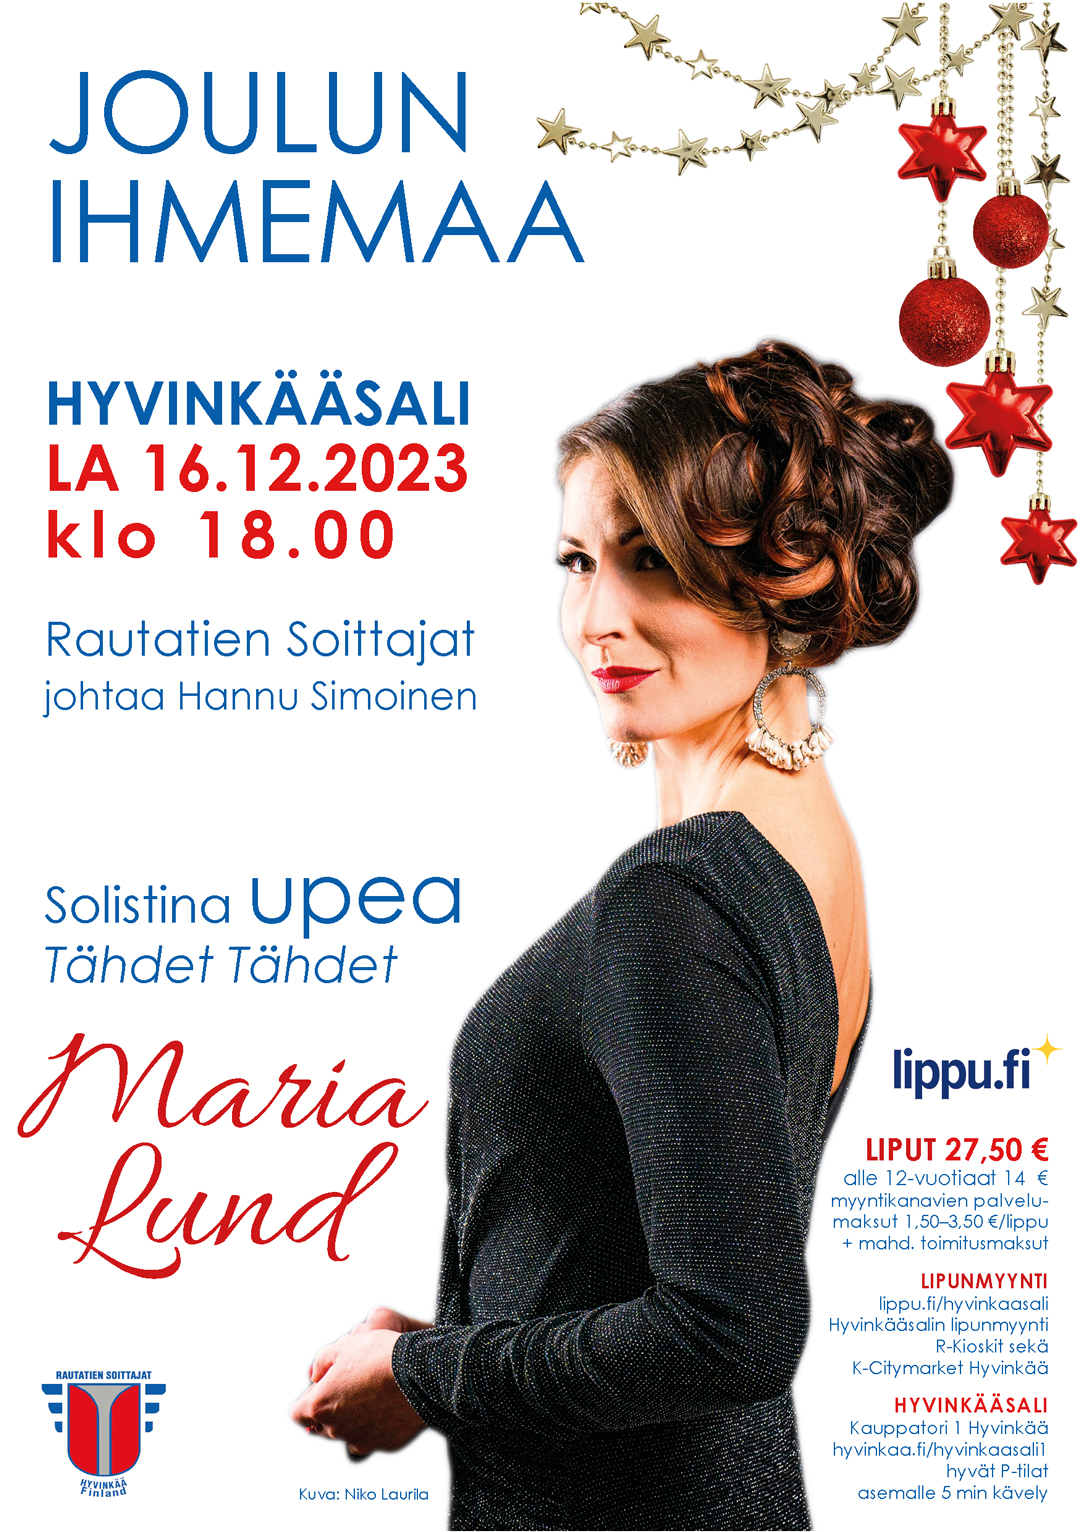 orkesterin joulukonsertti Hyvinkääsalissa, solistina Maria Lund